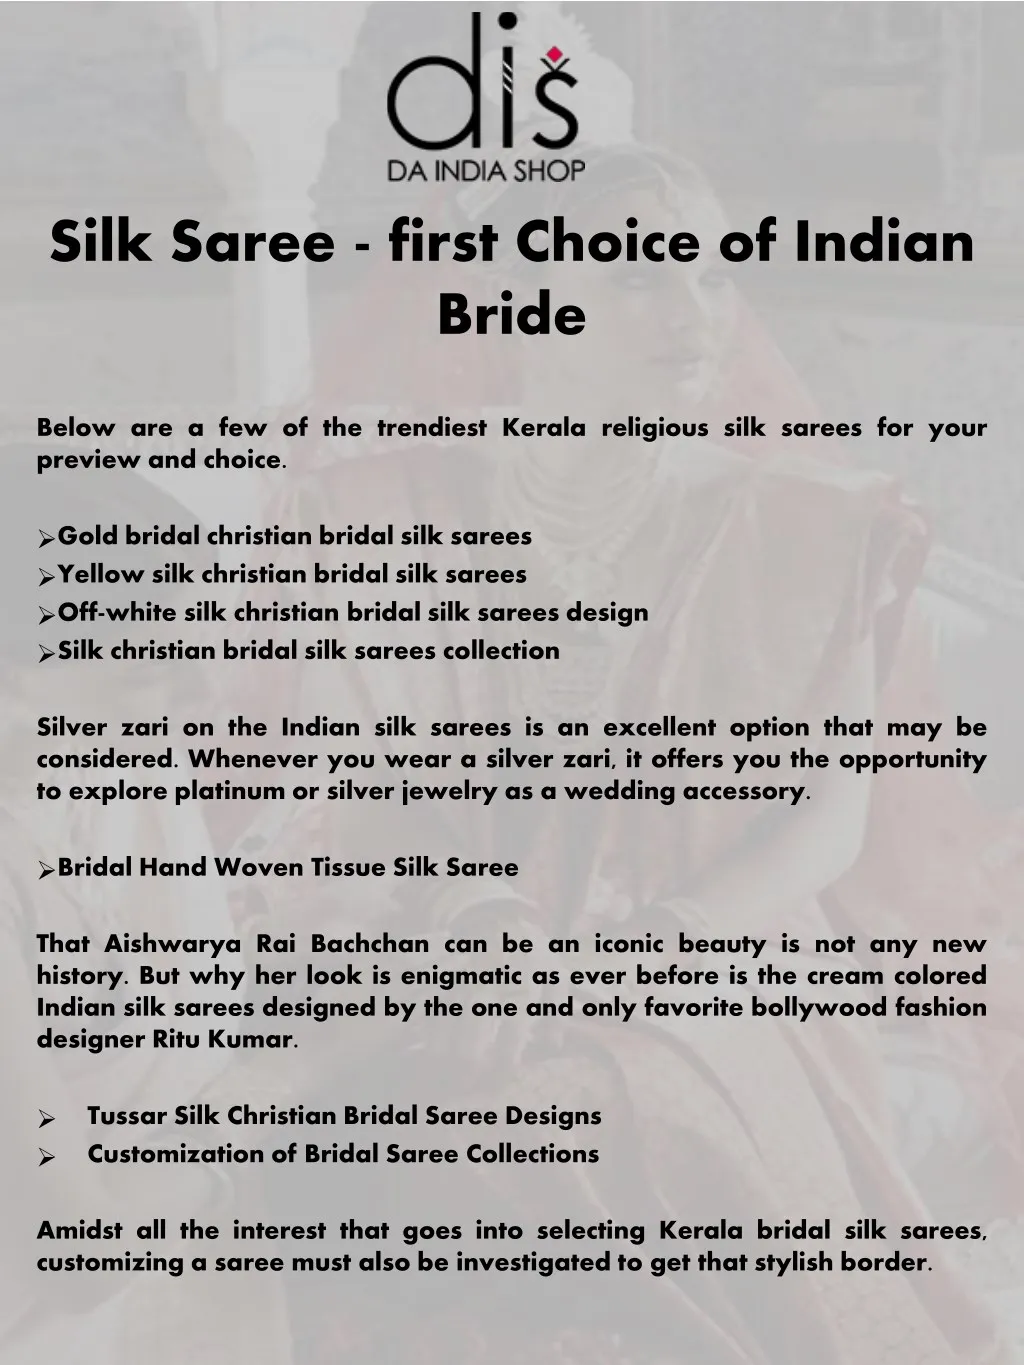 silk saree first choice of indian bride